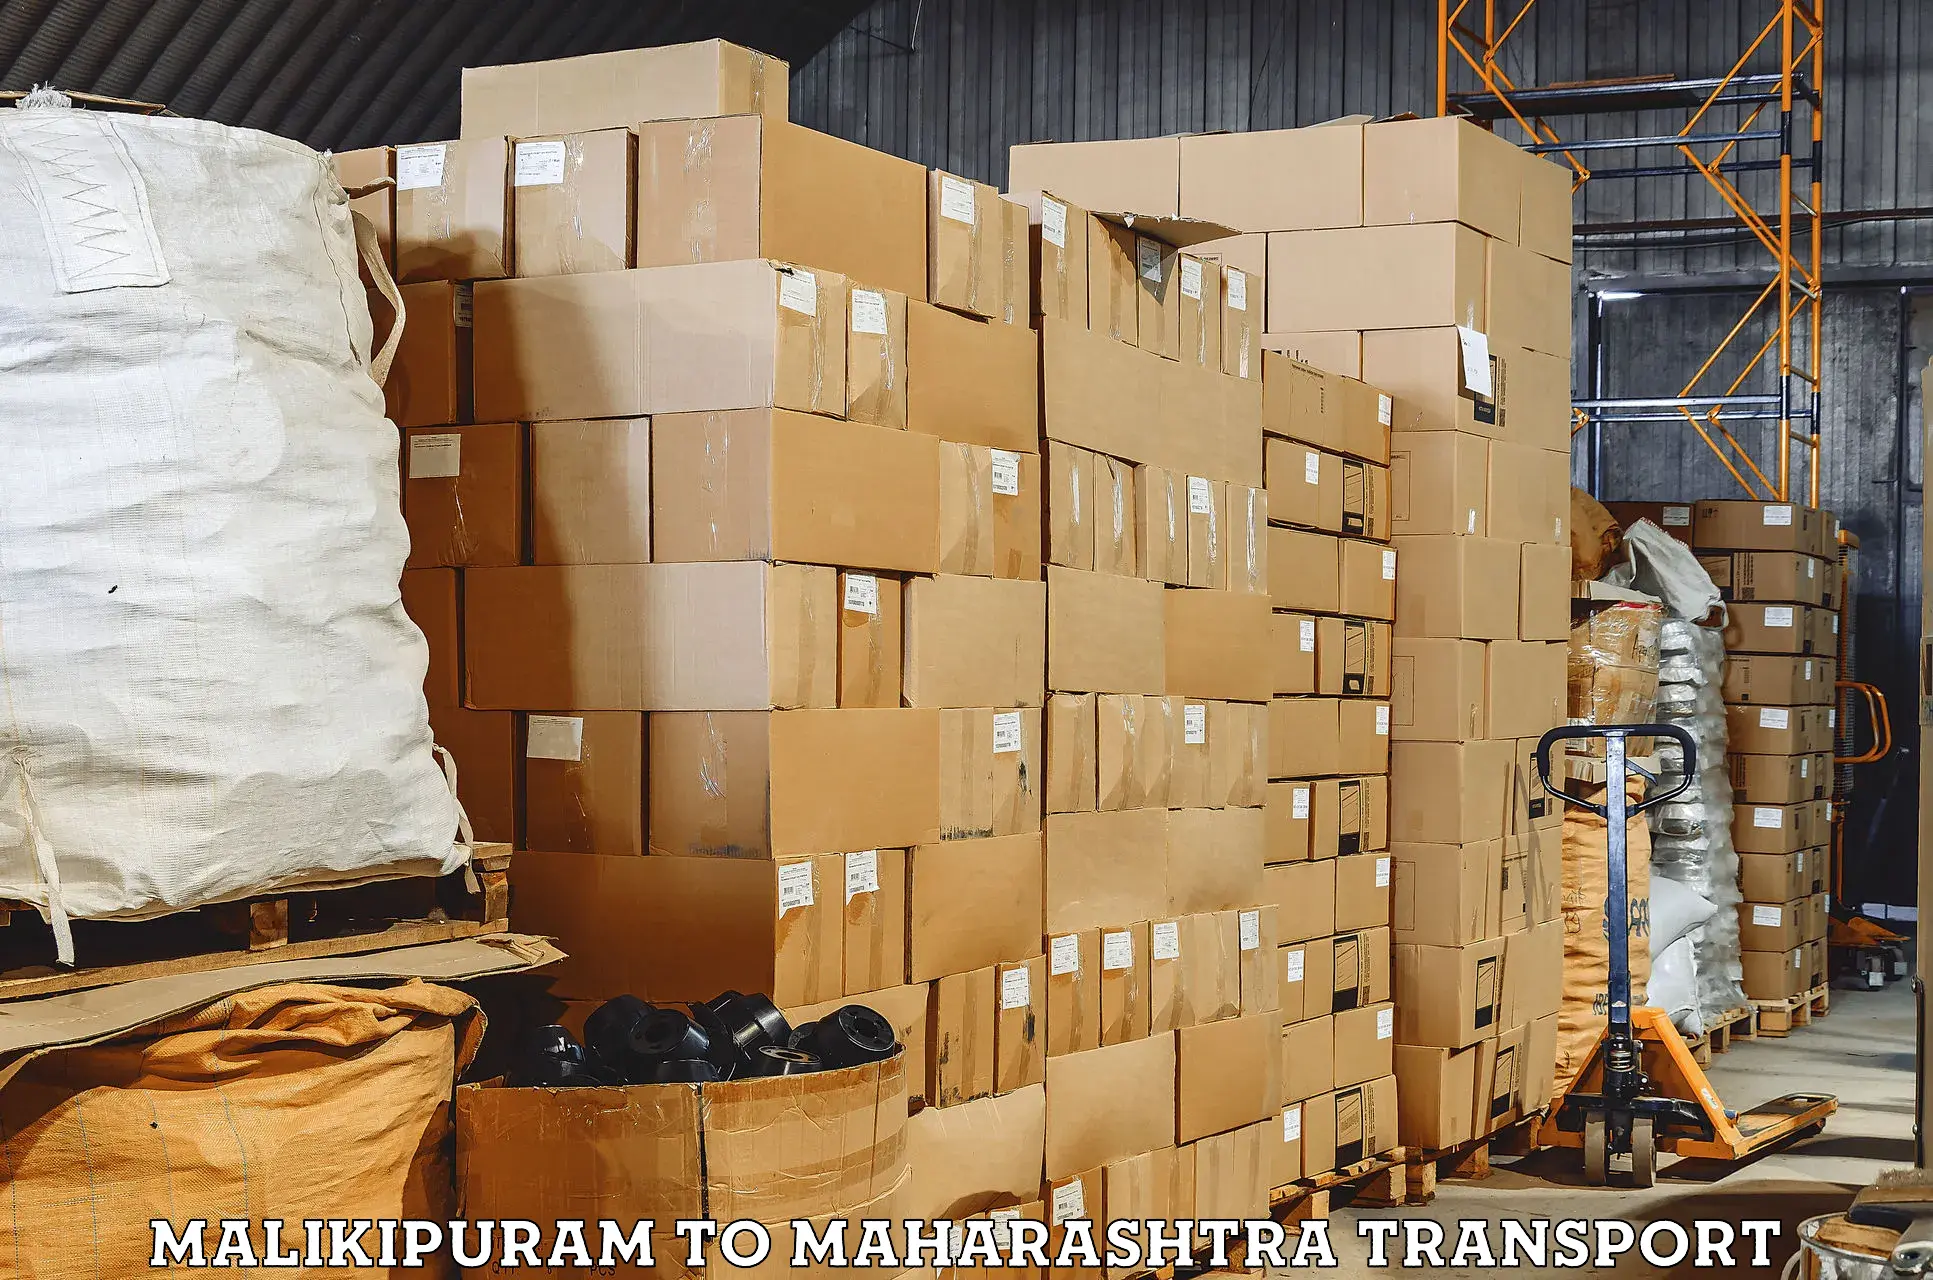 Furniture transport service Malikipuram to Bhandara